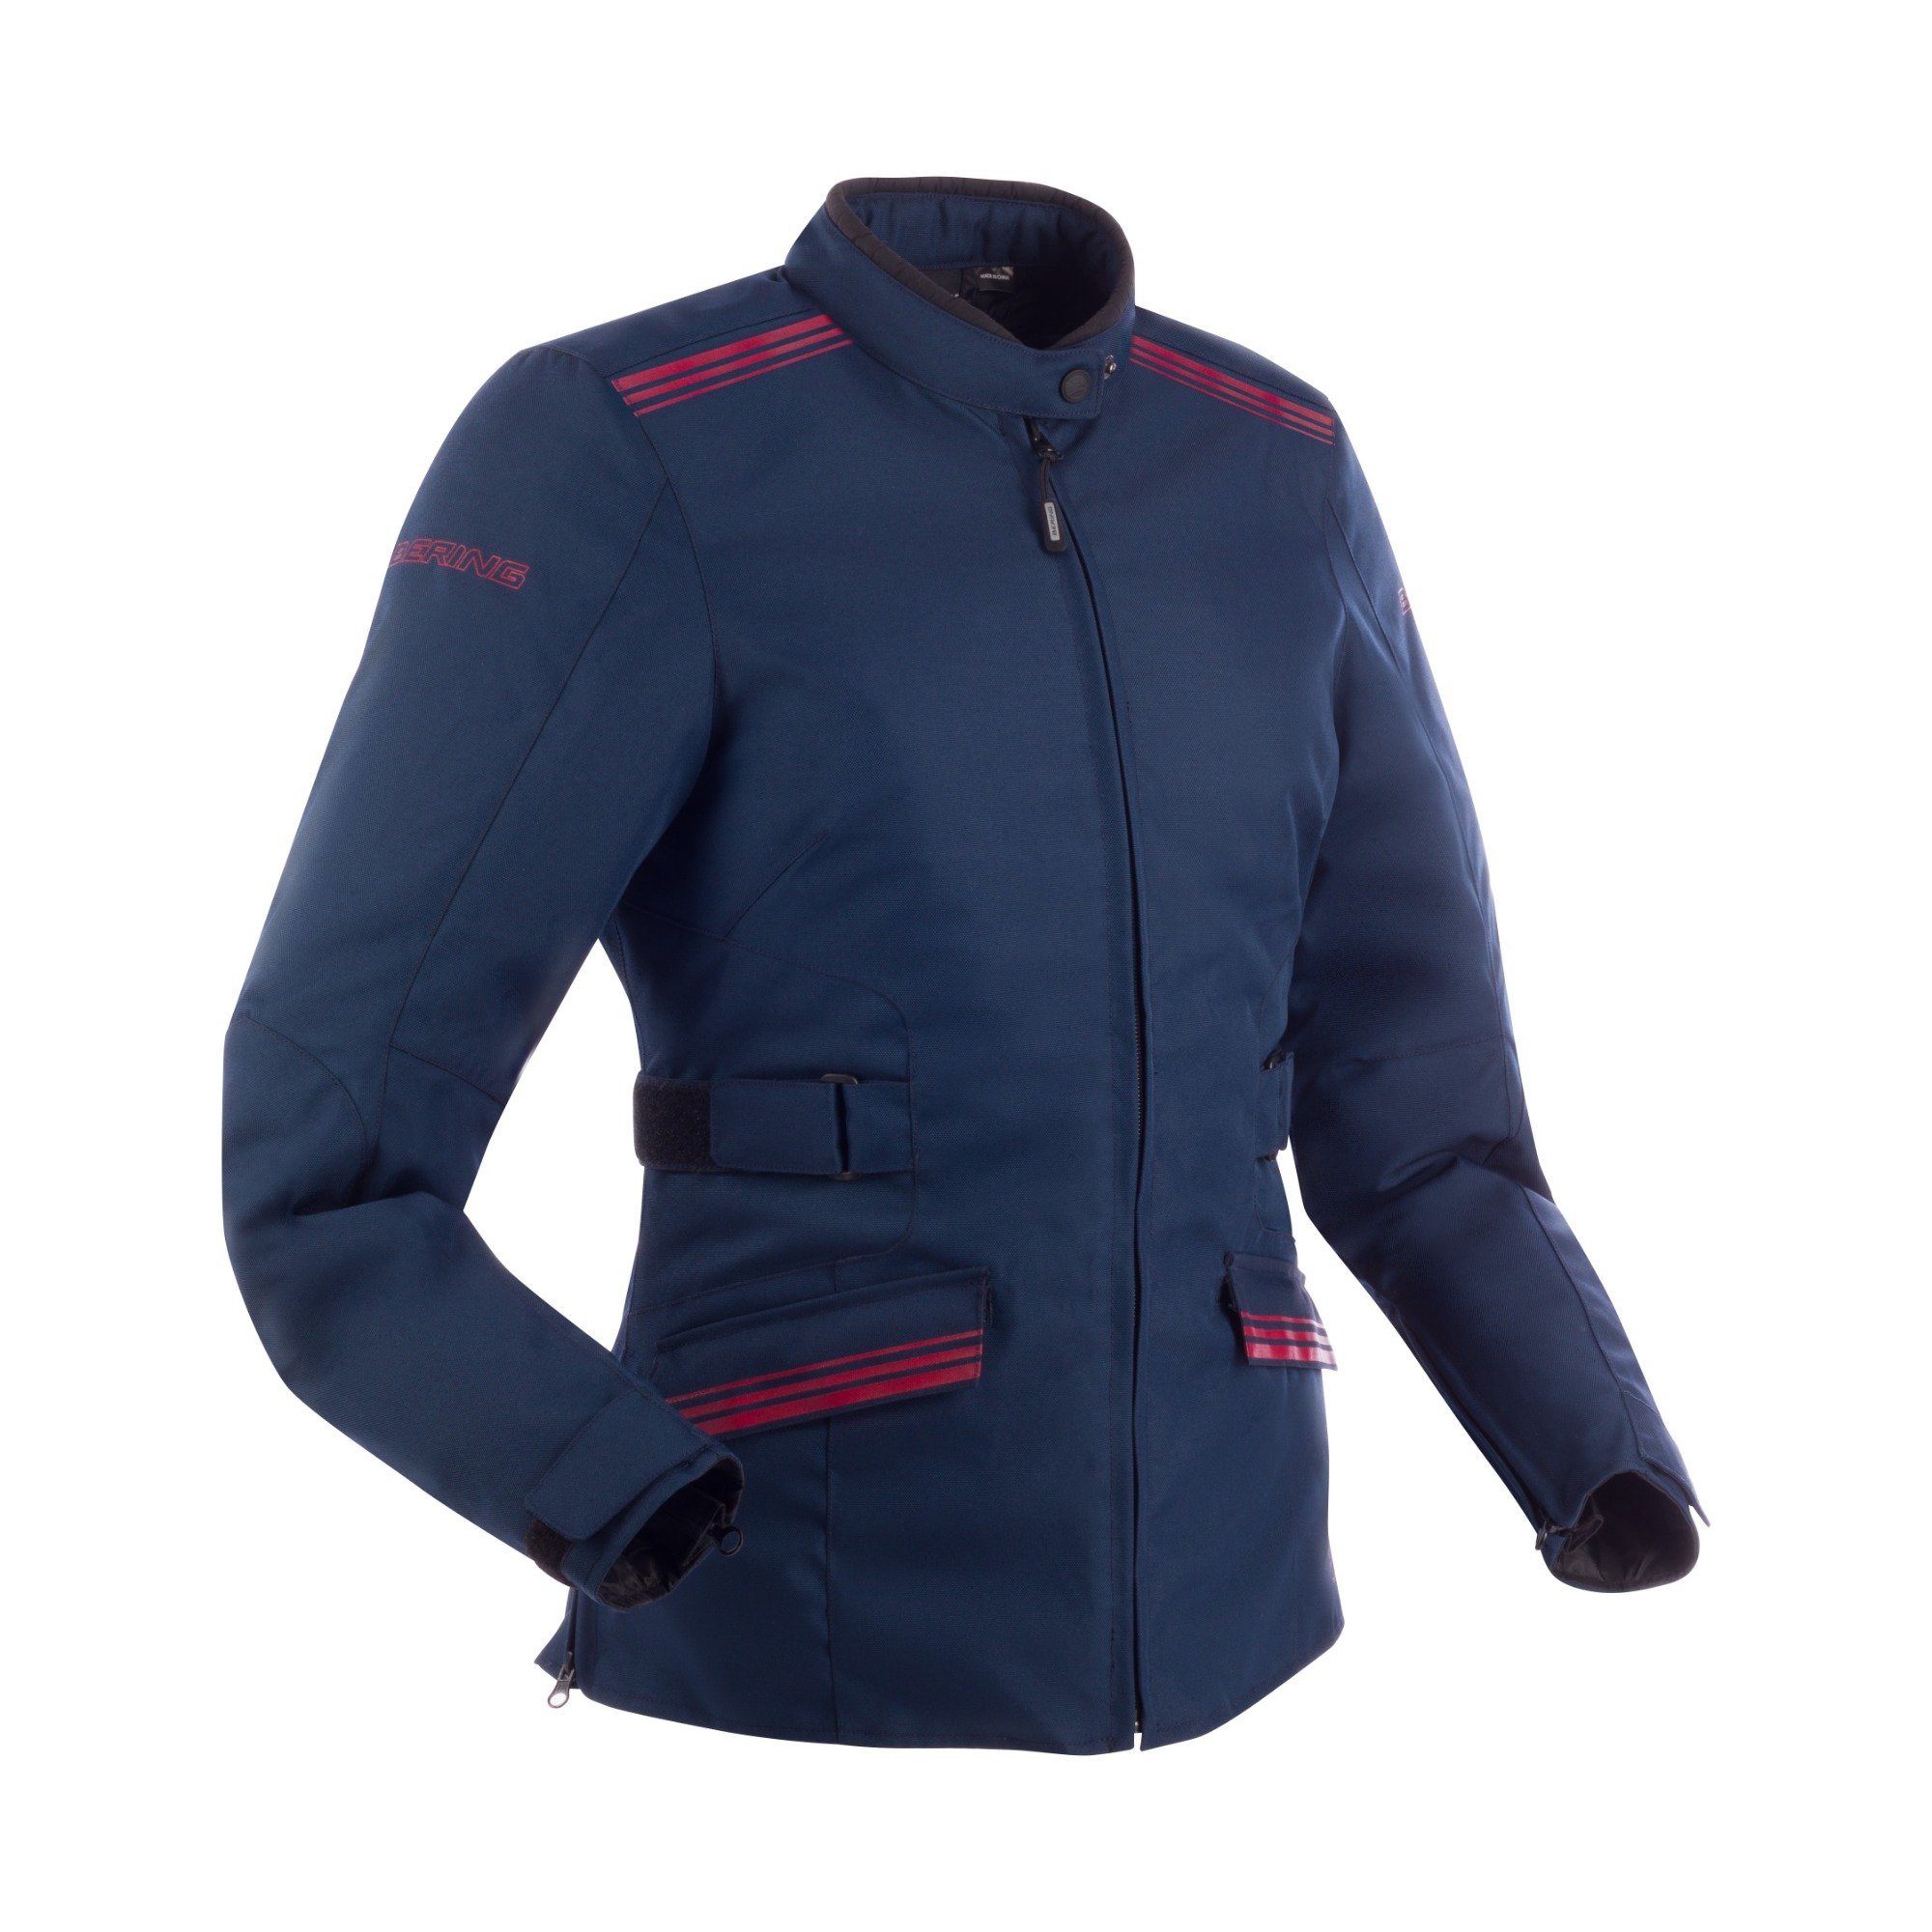 Image of Bering Shine Jacket Lady Navy Blue Burgundy Size T6 ID 3660815170007